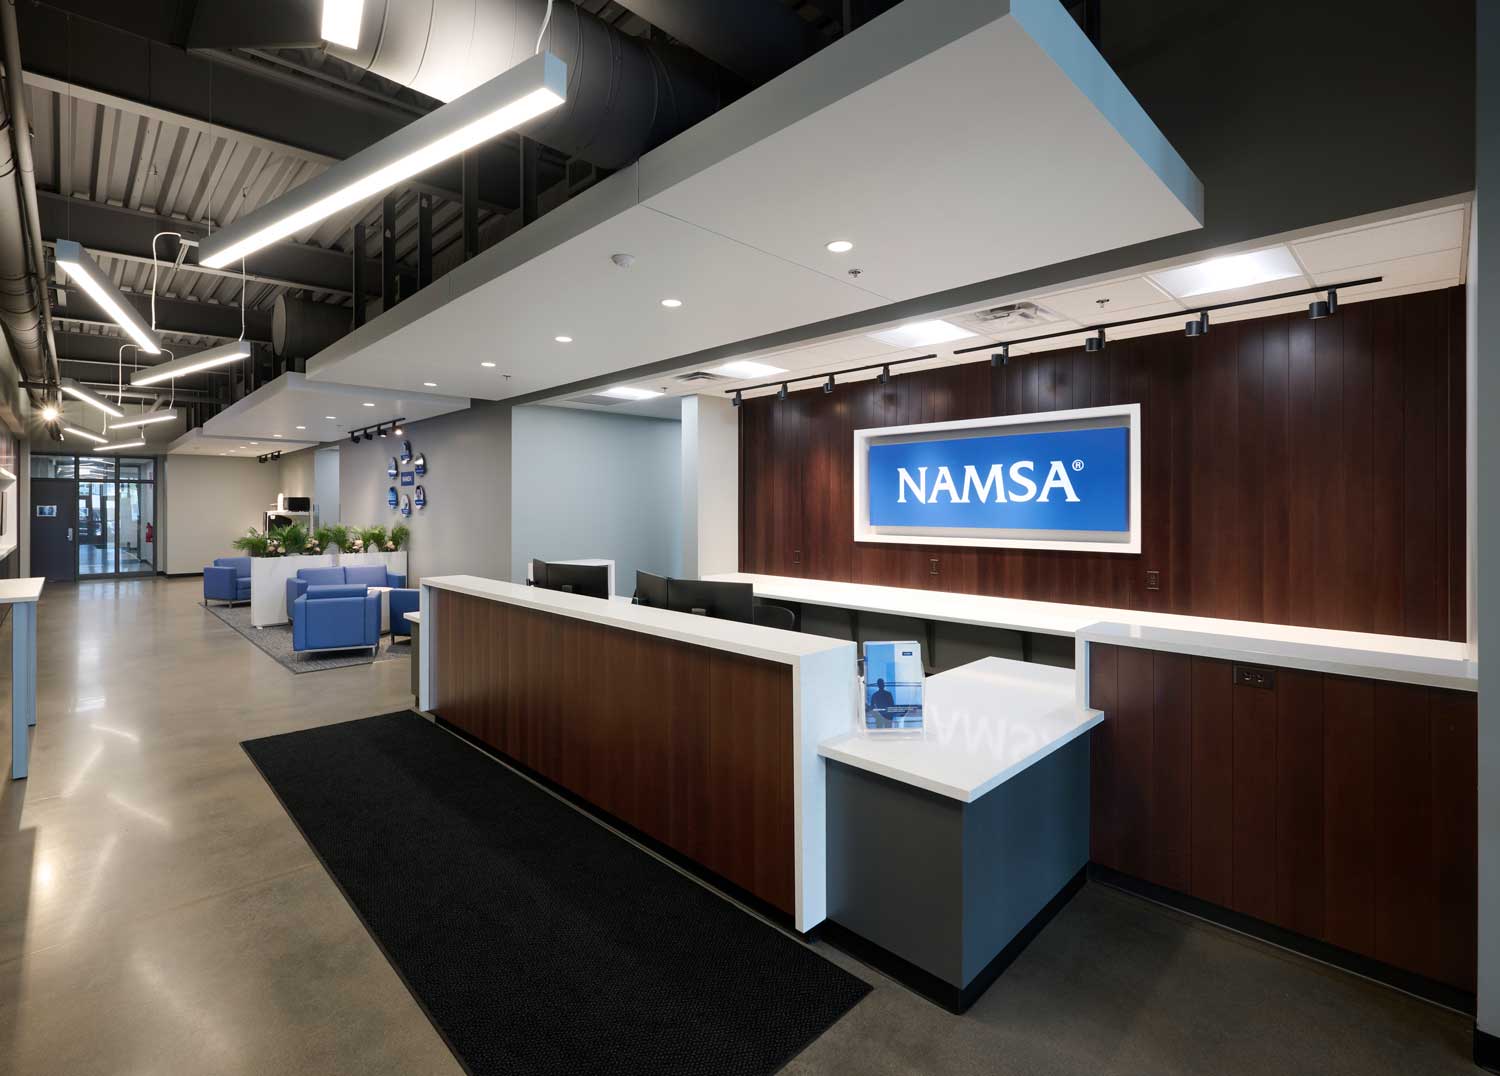 NAMSA / American Preclinical Services